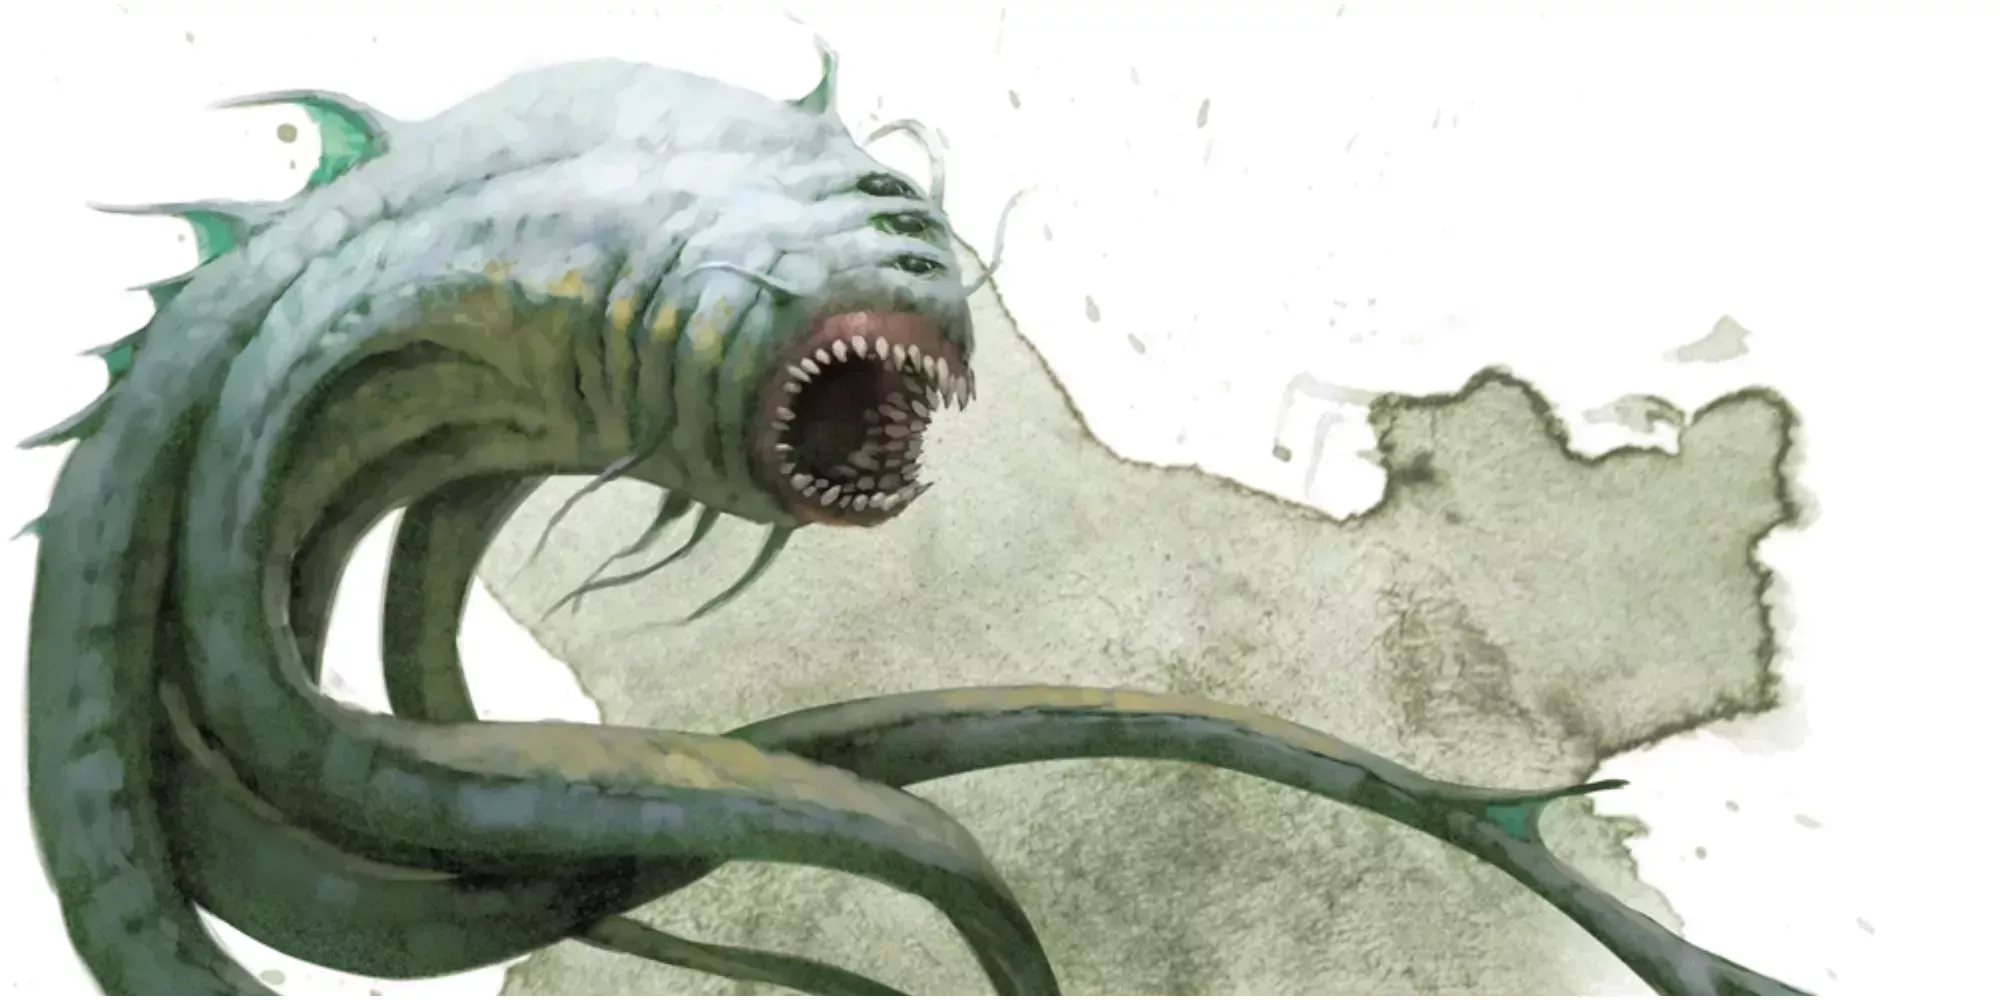 An underwater Aboleth monster in Dungeons & Dragons